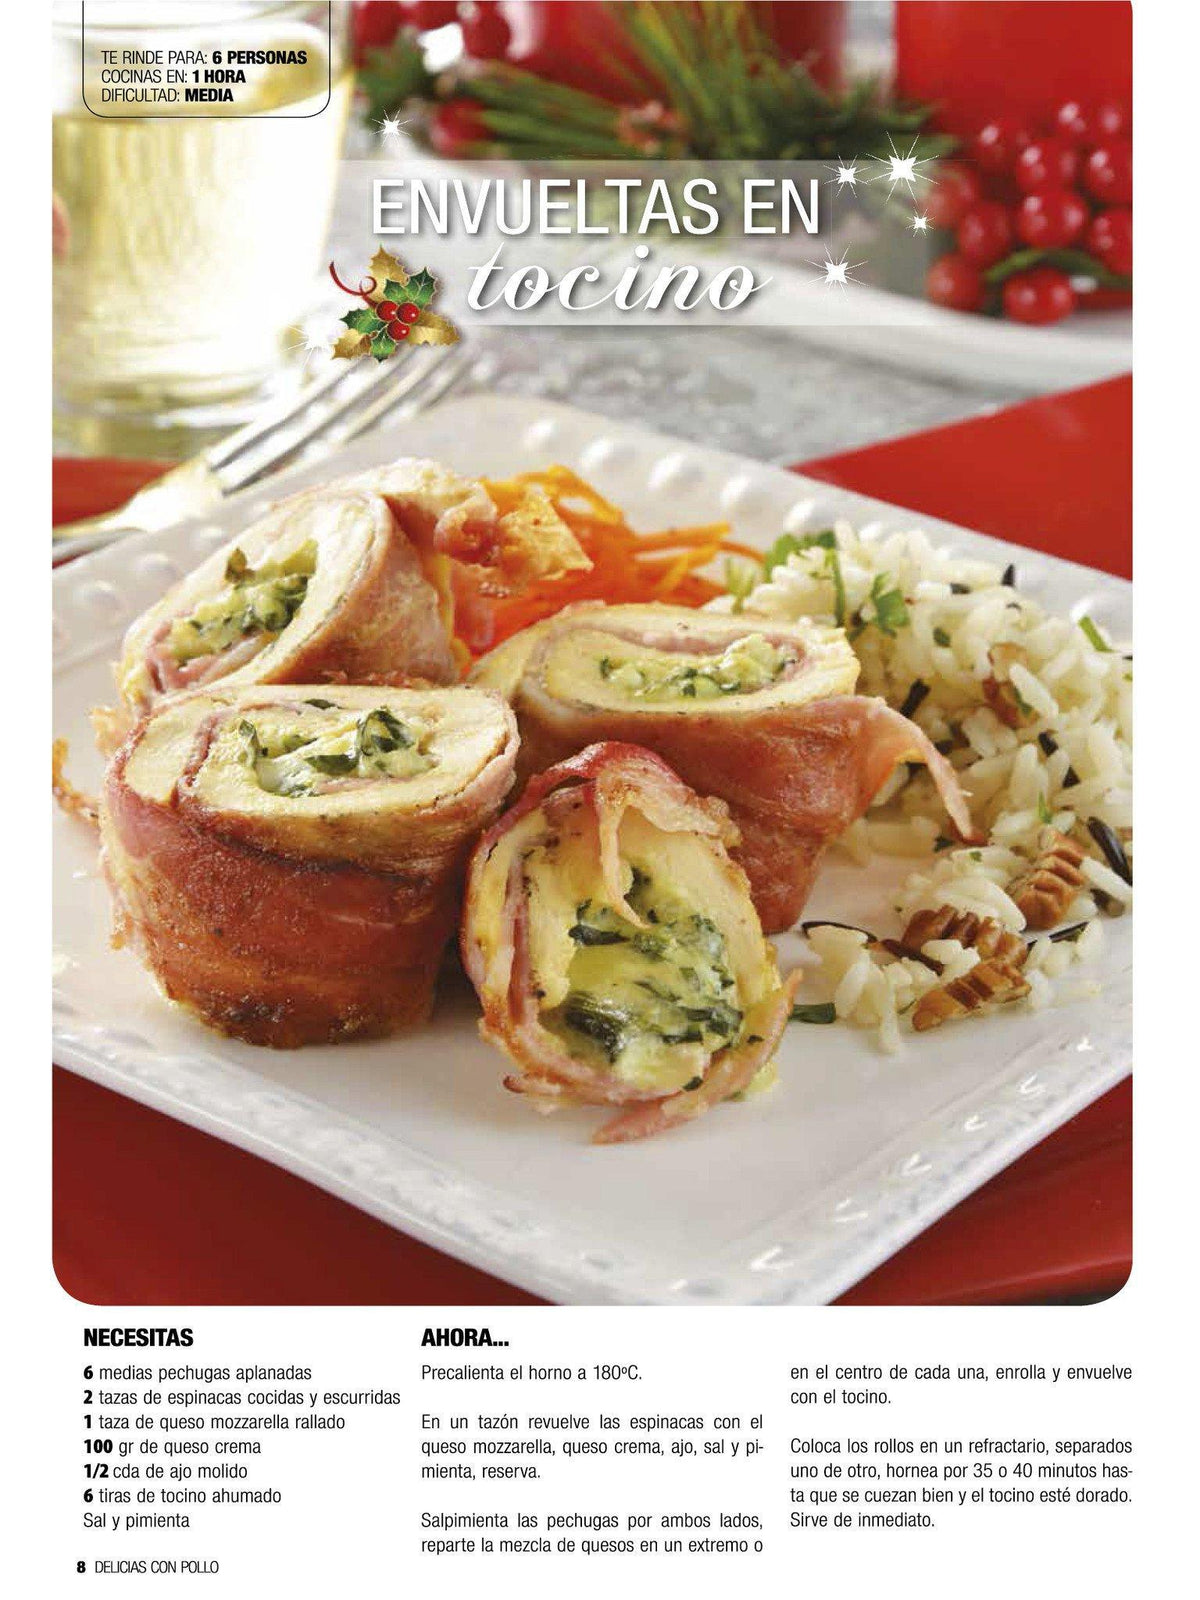 Delicias con Pollo Especial 28 - pechugas rellenas y envueltas para Navidad - Formato Digital - ToukanMango